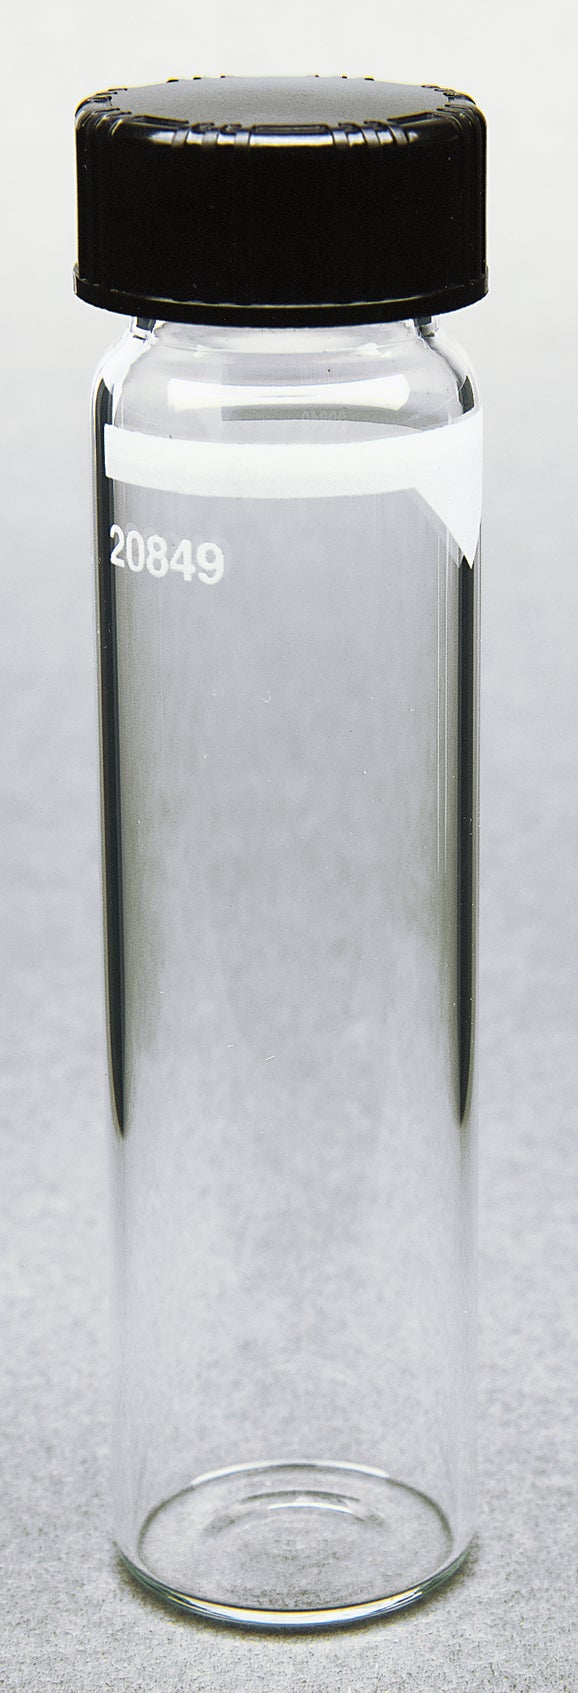 Celdas para muestras turbidím de laboratorio, Hach